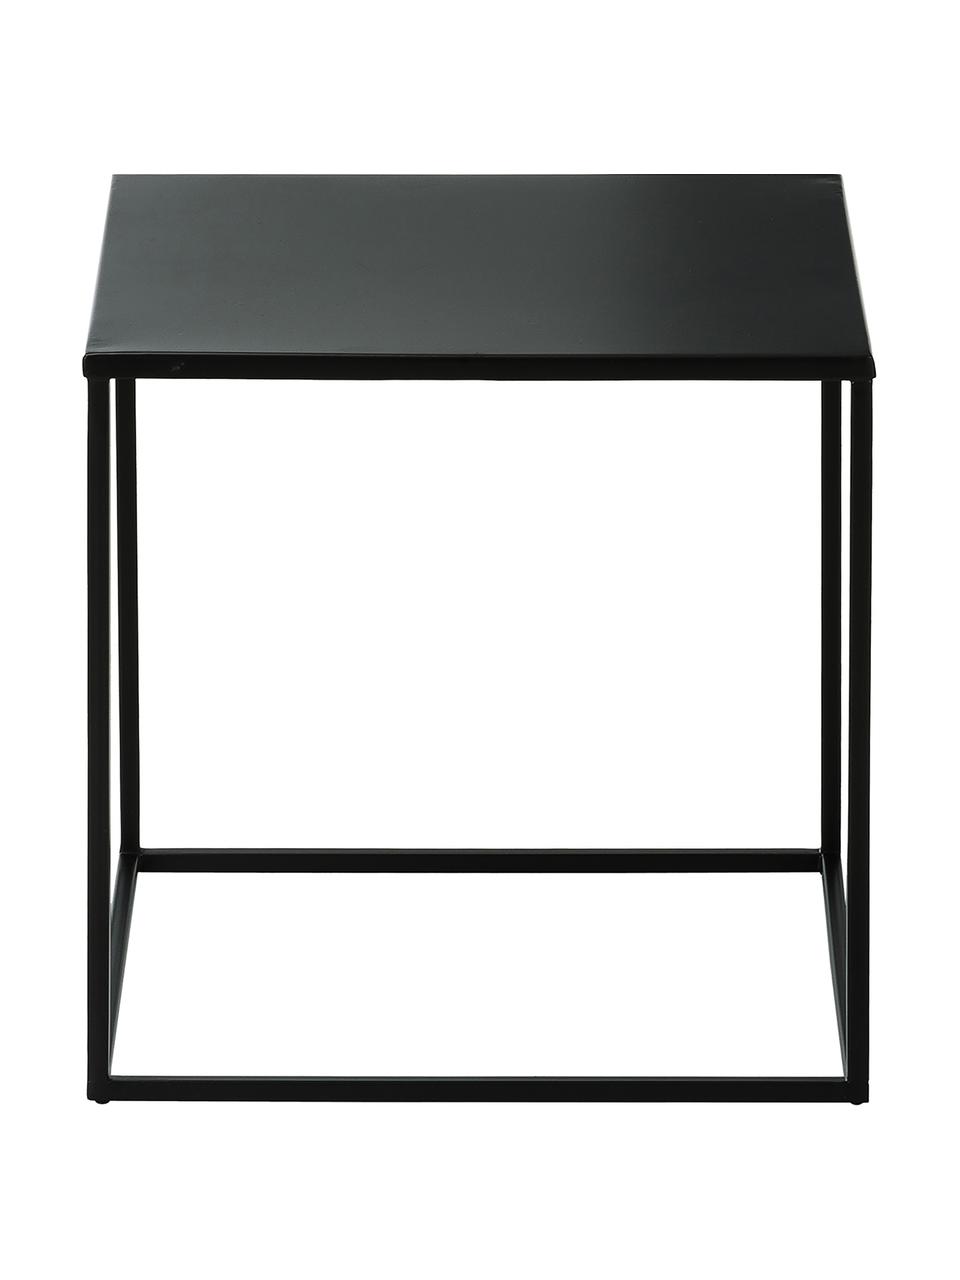 Tavolino in metallo nero Stina, Metallo verniciato a polvere, Nero opaco, Larg. 45 x Alt. 45 cm